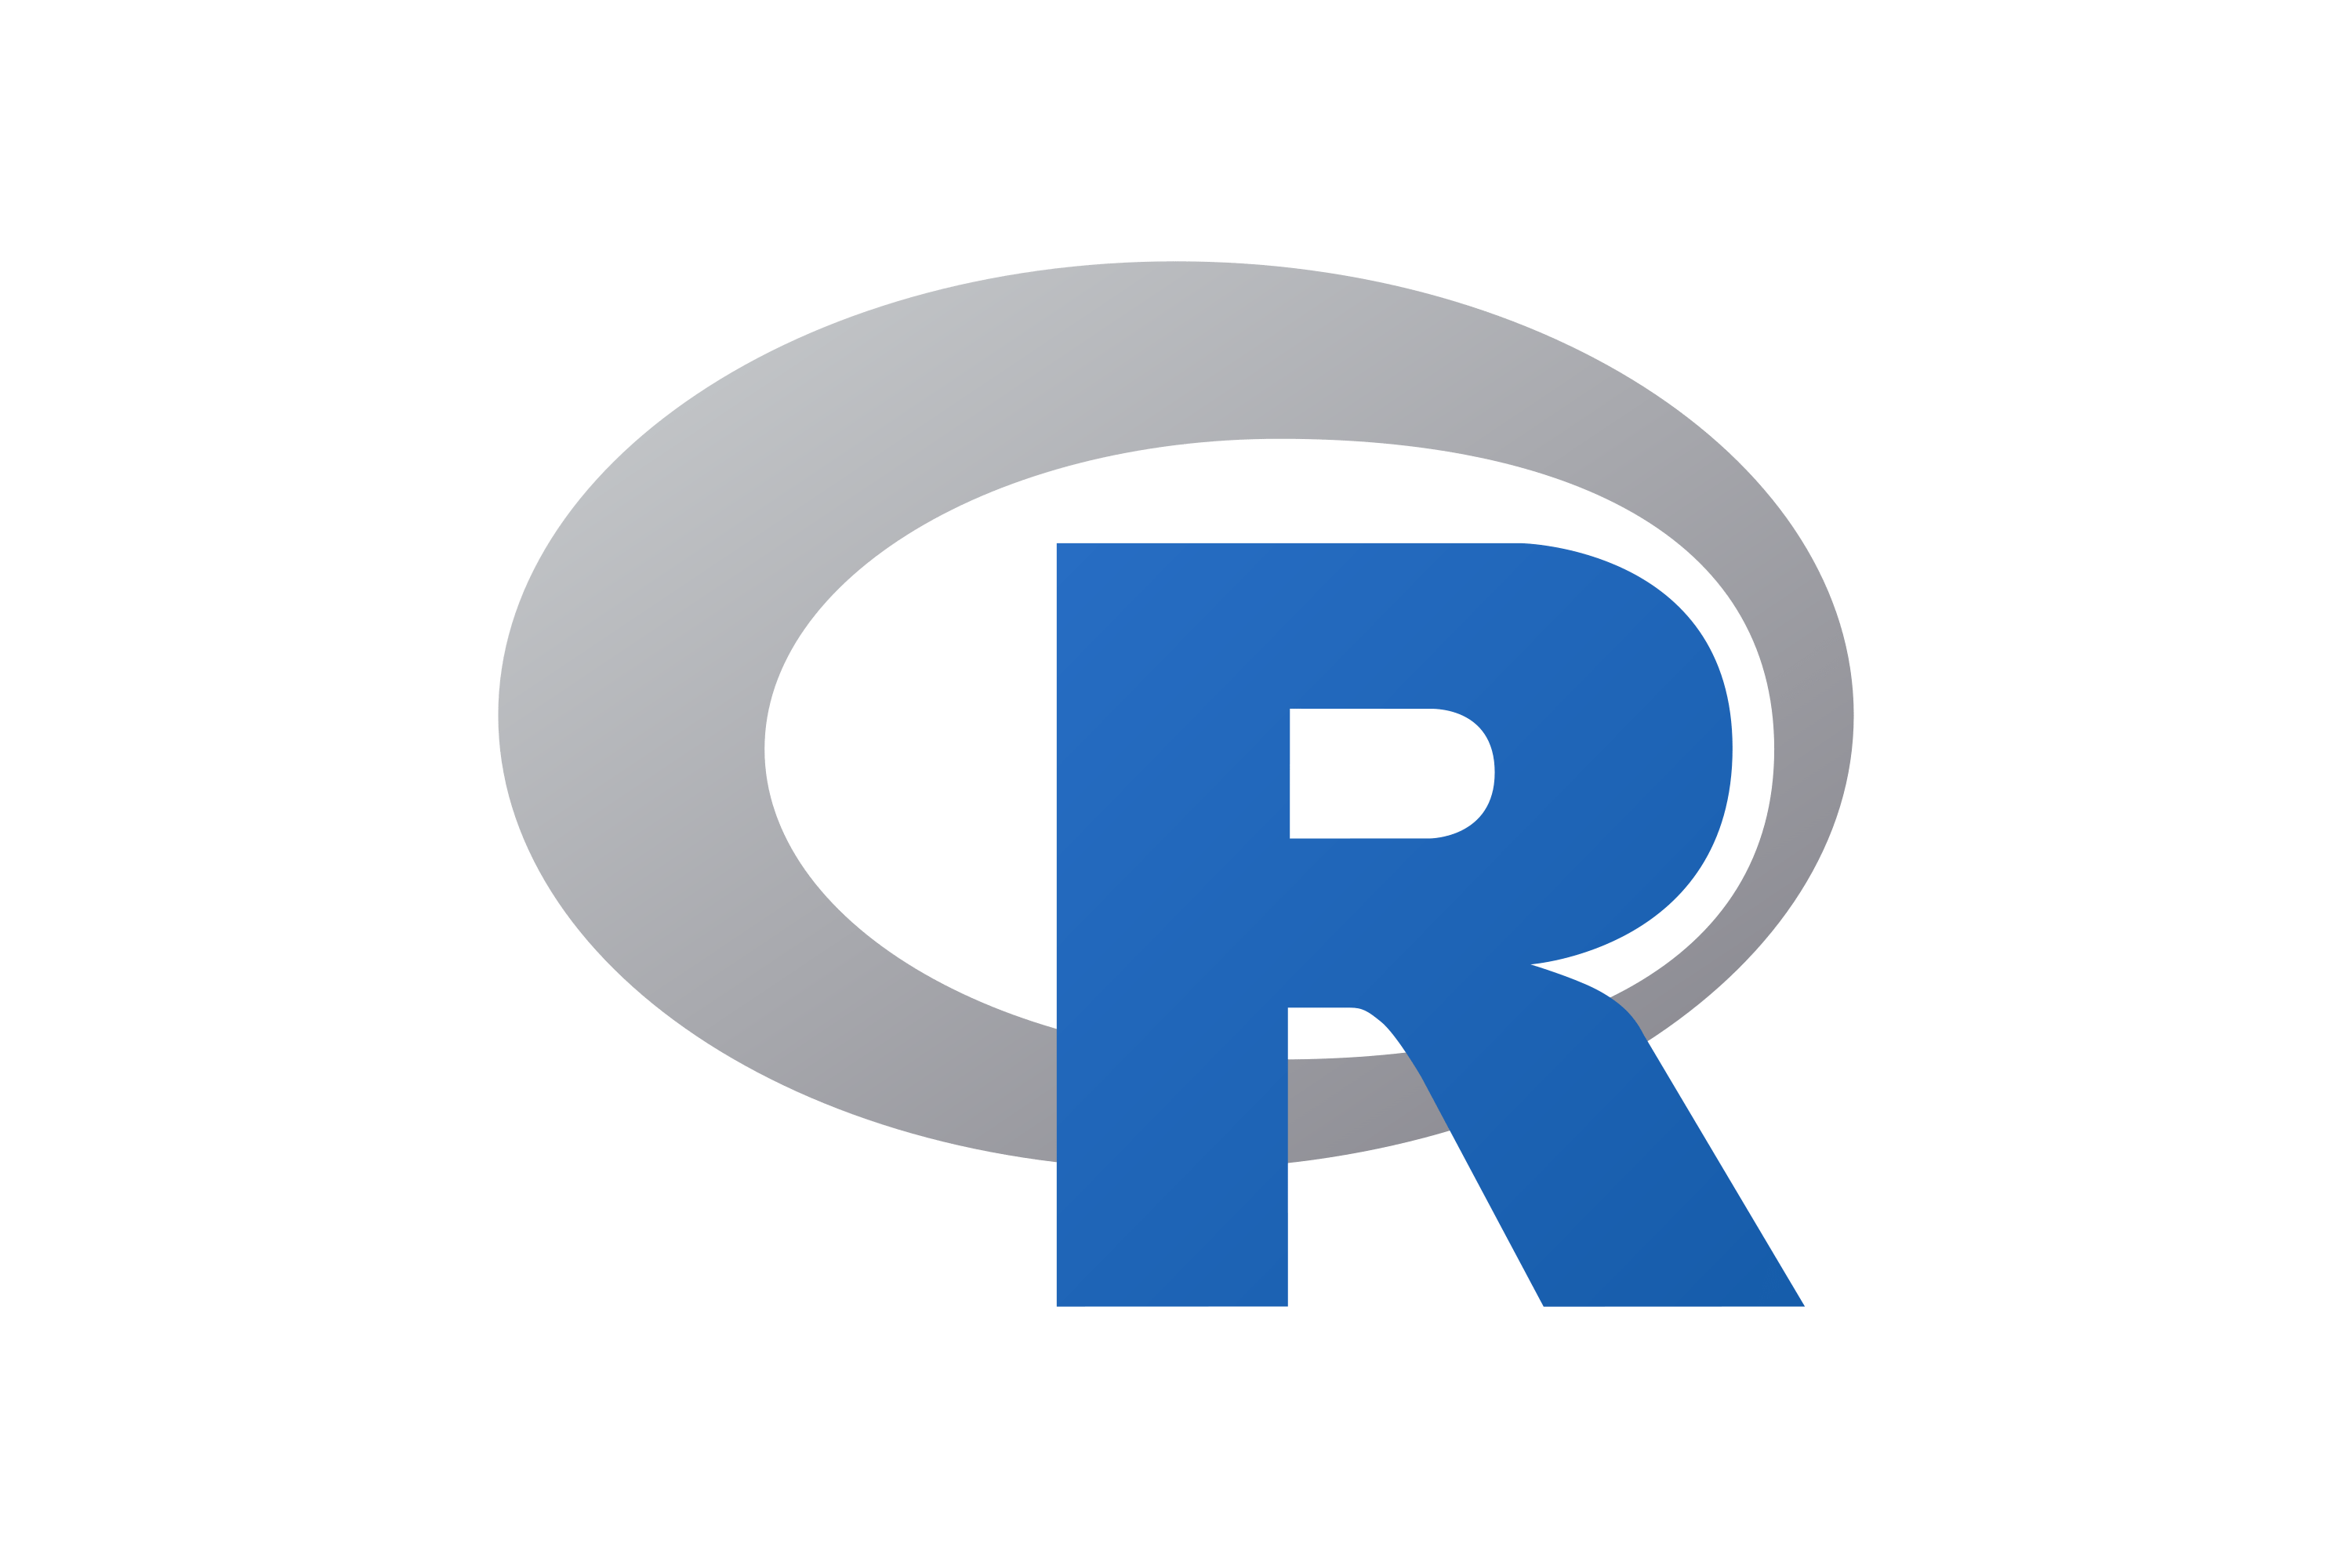 logo of R language